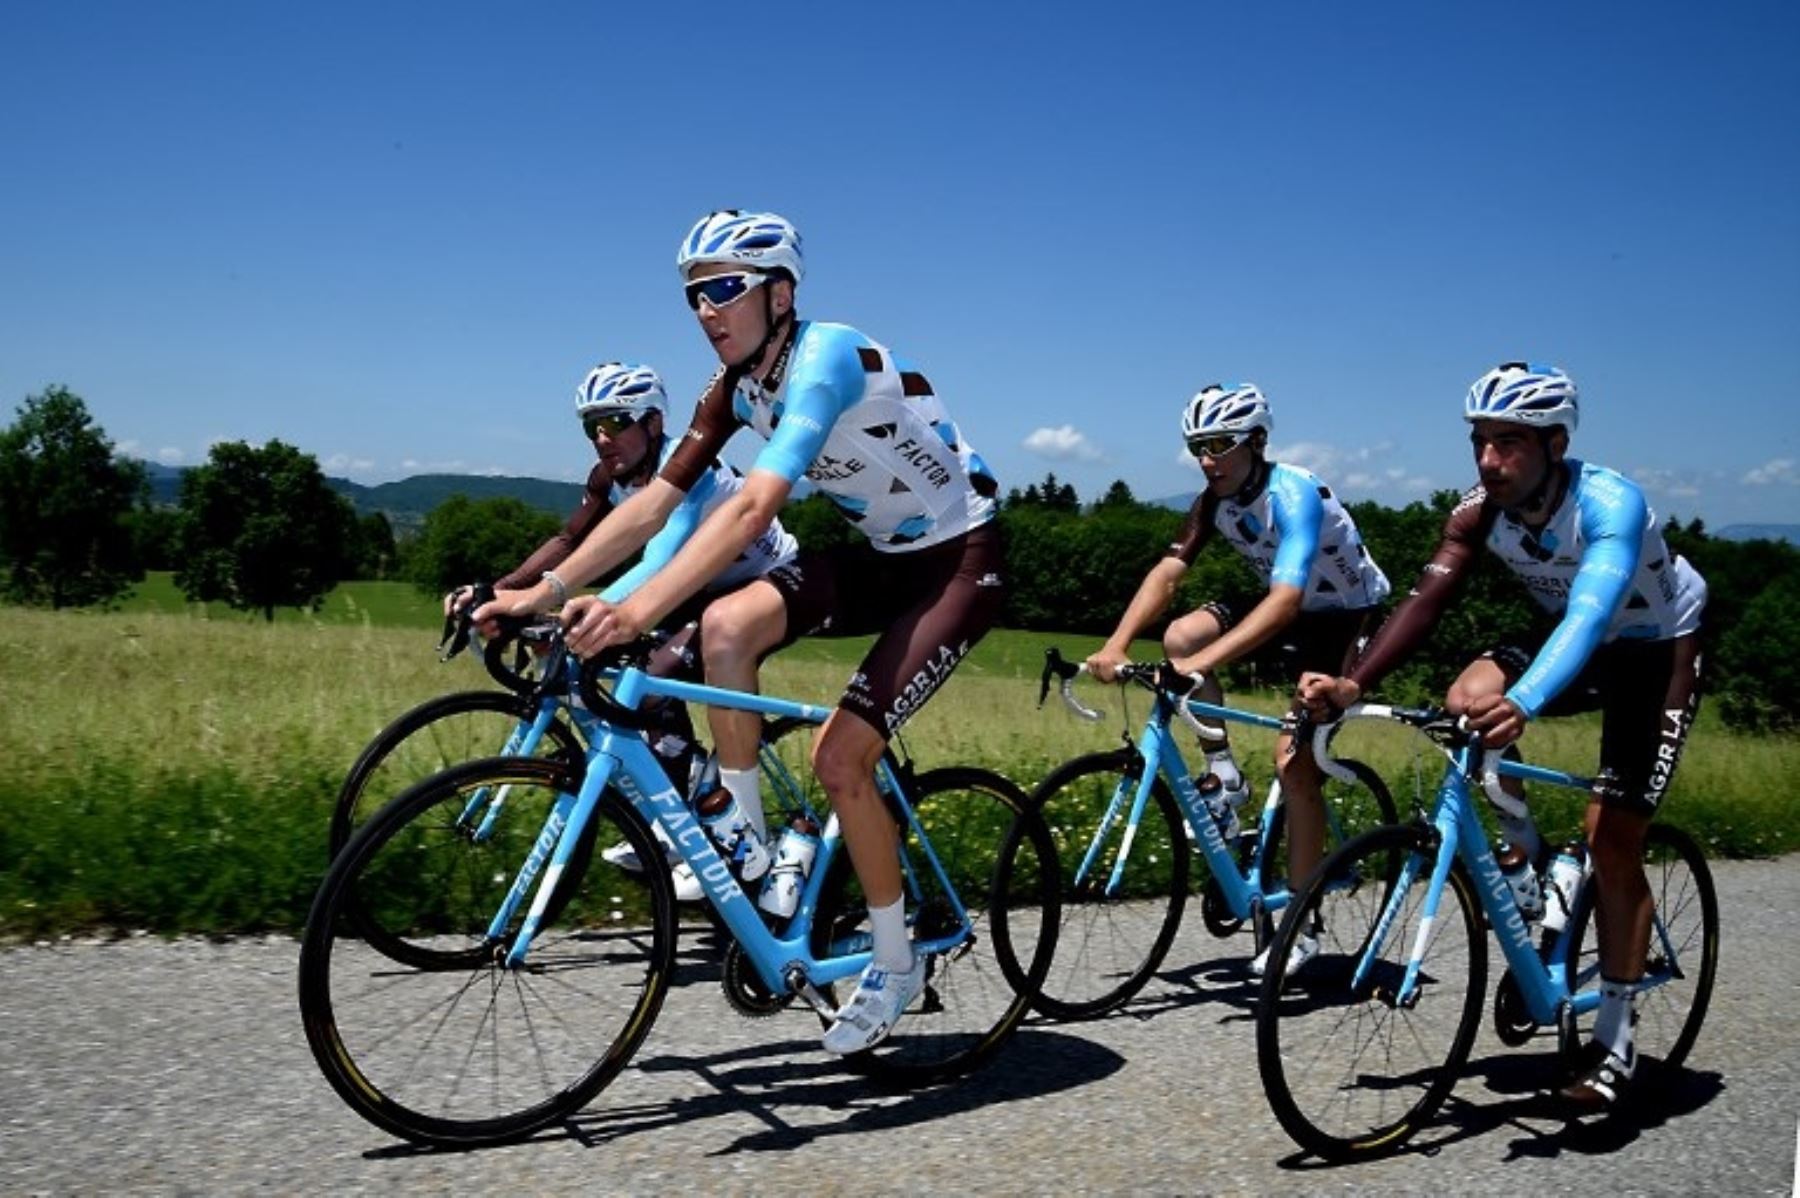 El Tour de Francia es una de la competencias ciclísticas más reconocidas del mundo